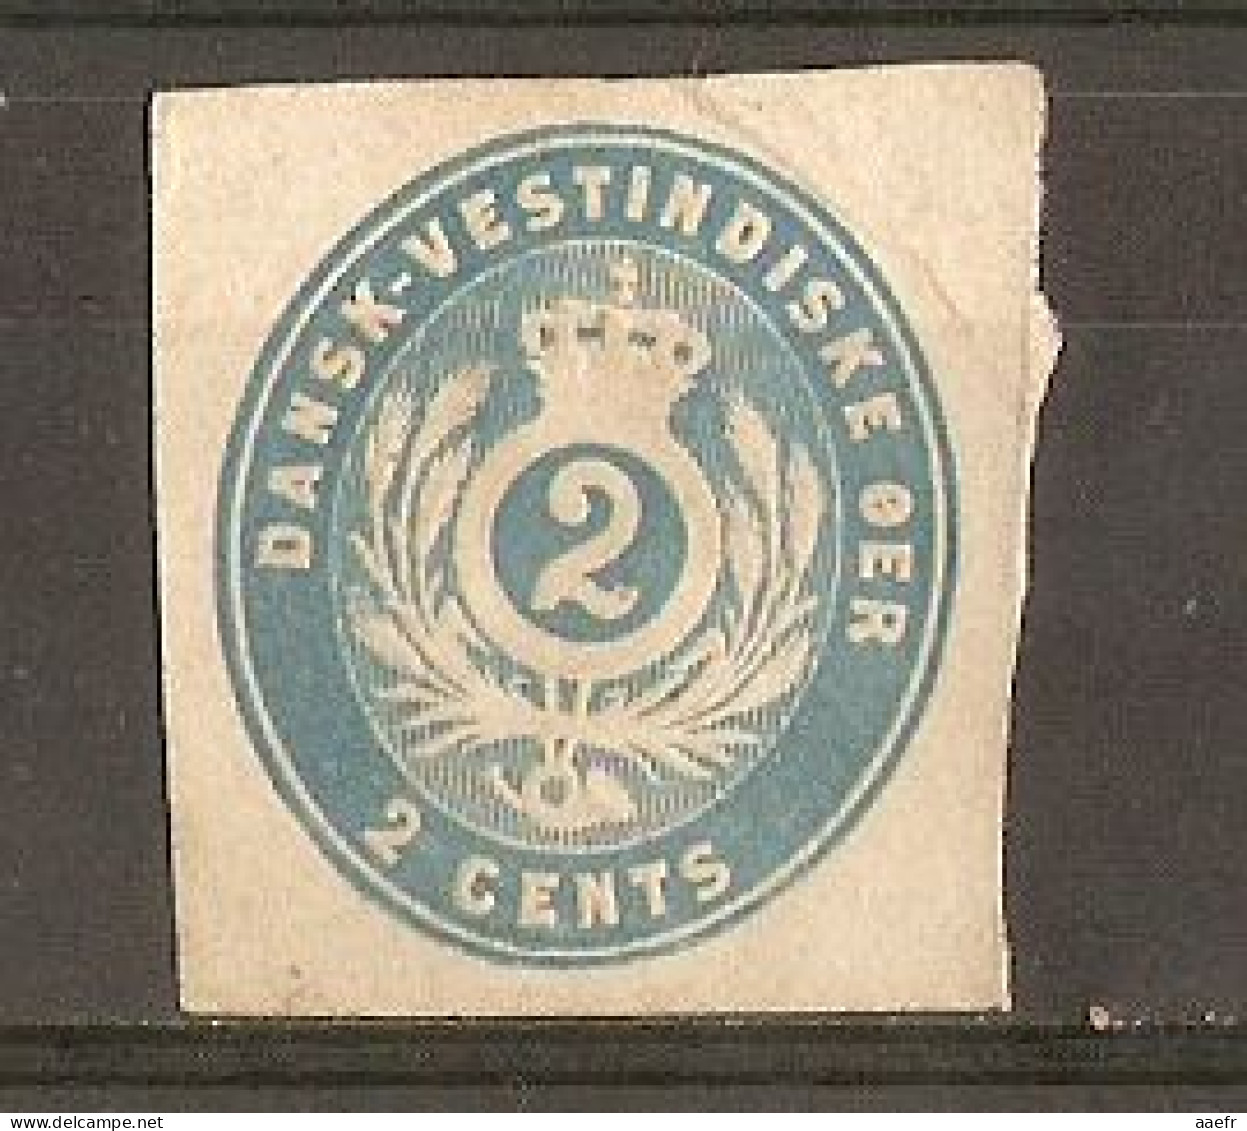 Danemark 1878 - Danish West Indies - Dansk-Vestindiske OER - 2 Cents Light Blue - Postal Stationery Cut - Fragment EP - Danemark (Antilles)